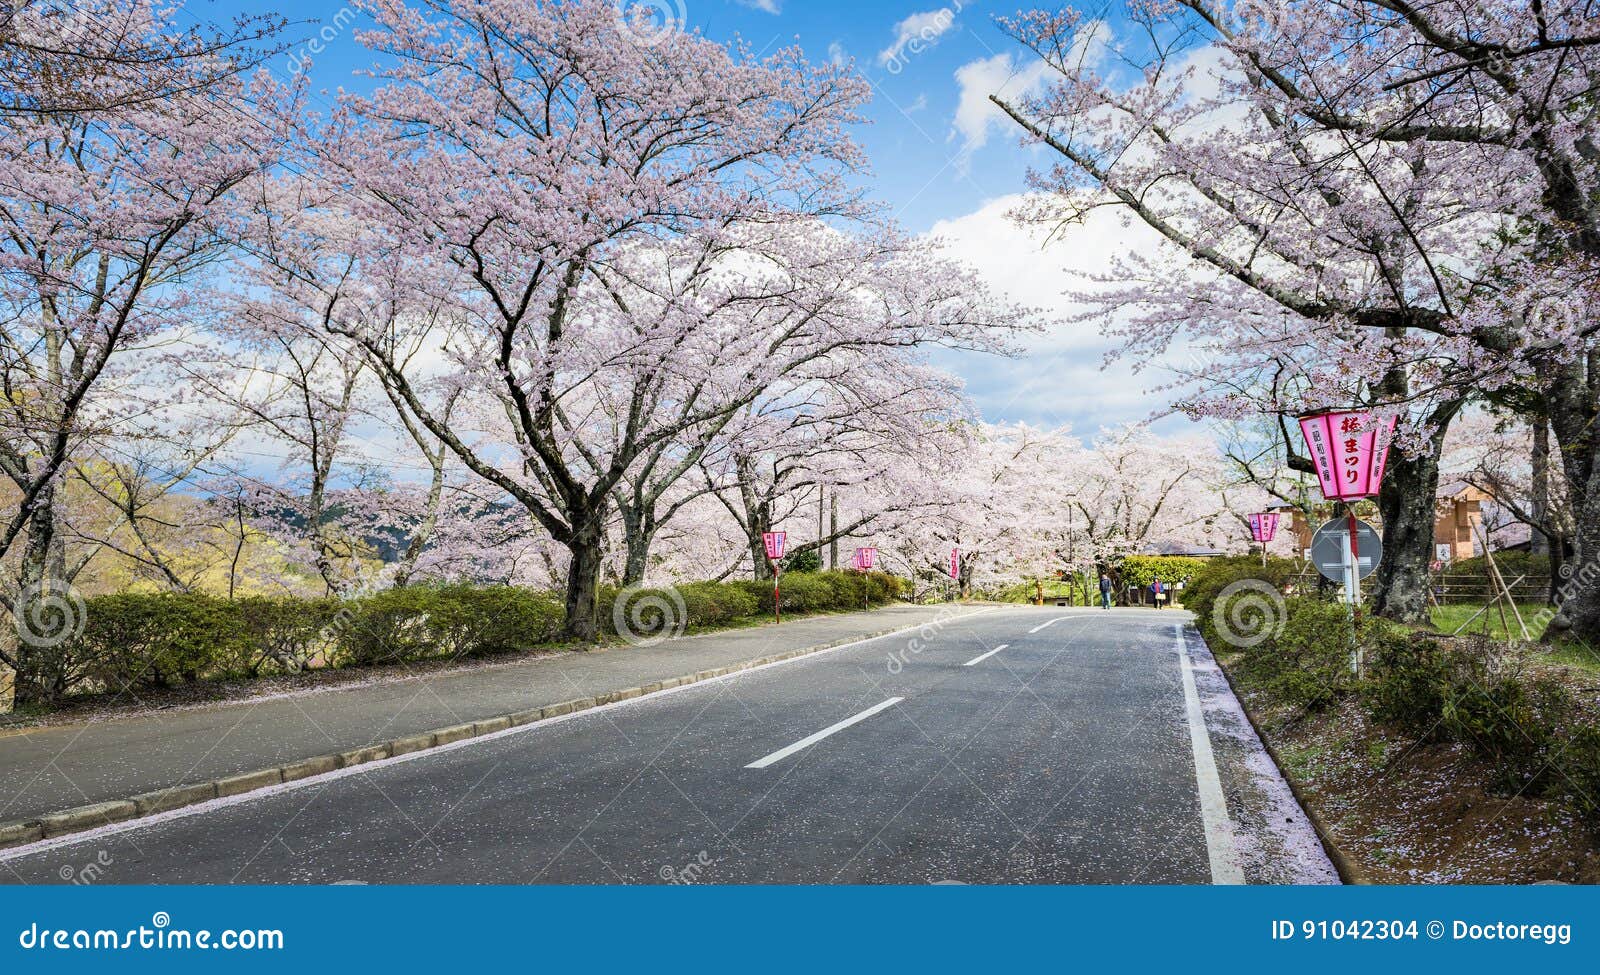 El camino con Sakura Trees en el castillo de Funaoka arruina el parque, Sendai, Japón. El parque de las ruinas del castillo de Funaoka es el lugar más popular para Sakura Sightseeing en primavera